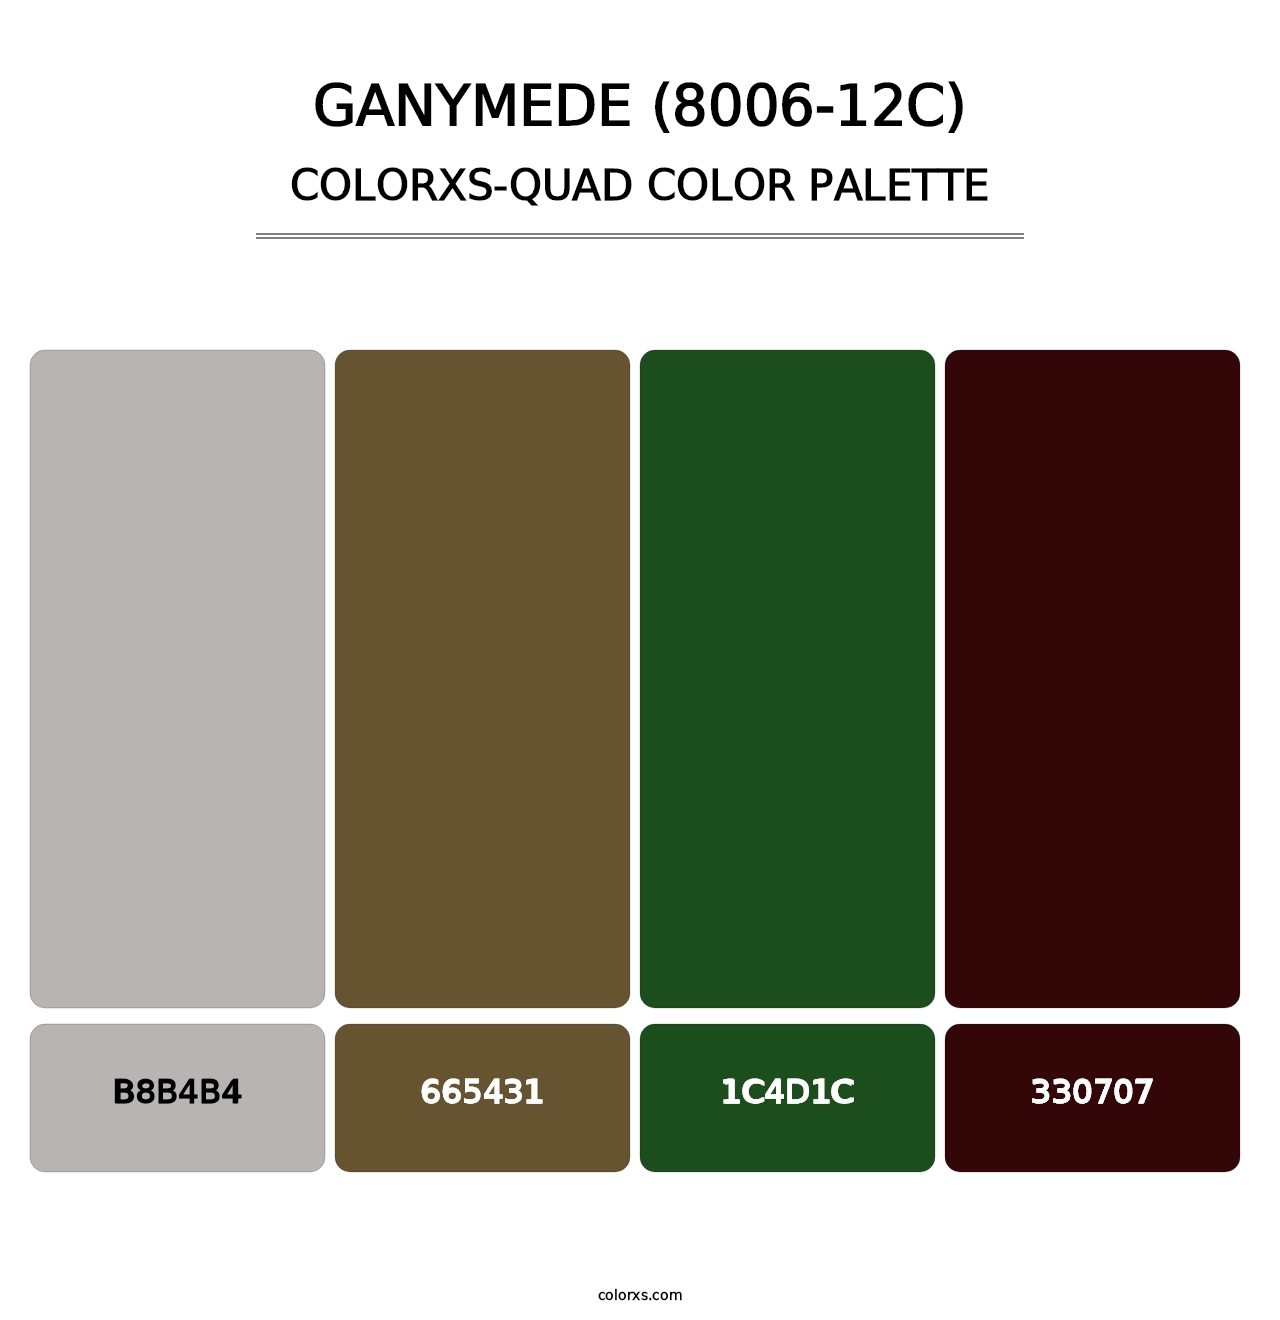 Ganymede (8006-12C) - Colorxs Quad Palette